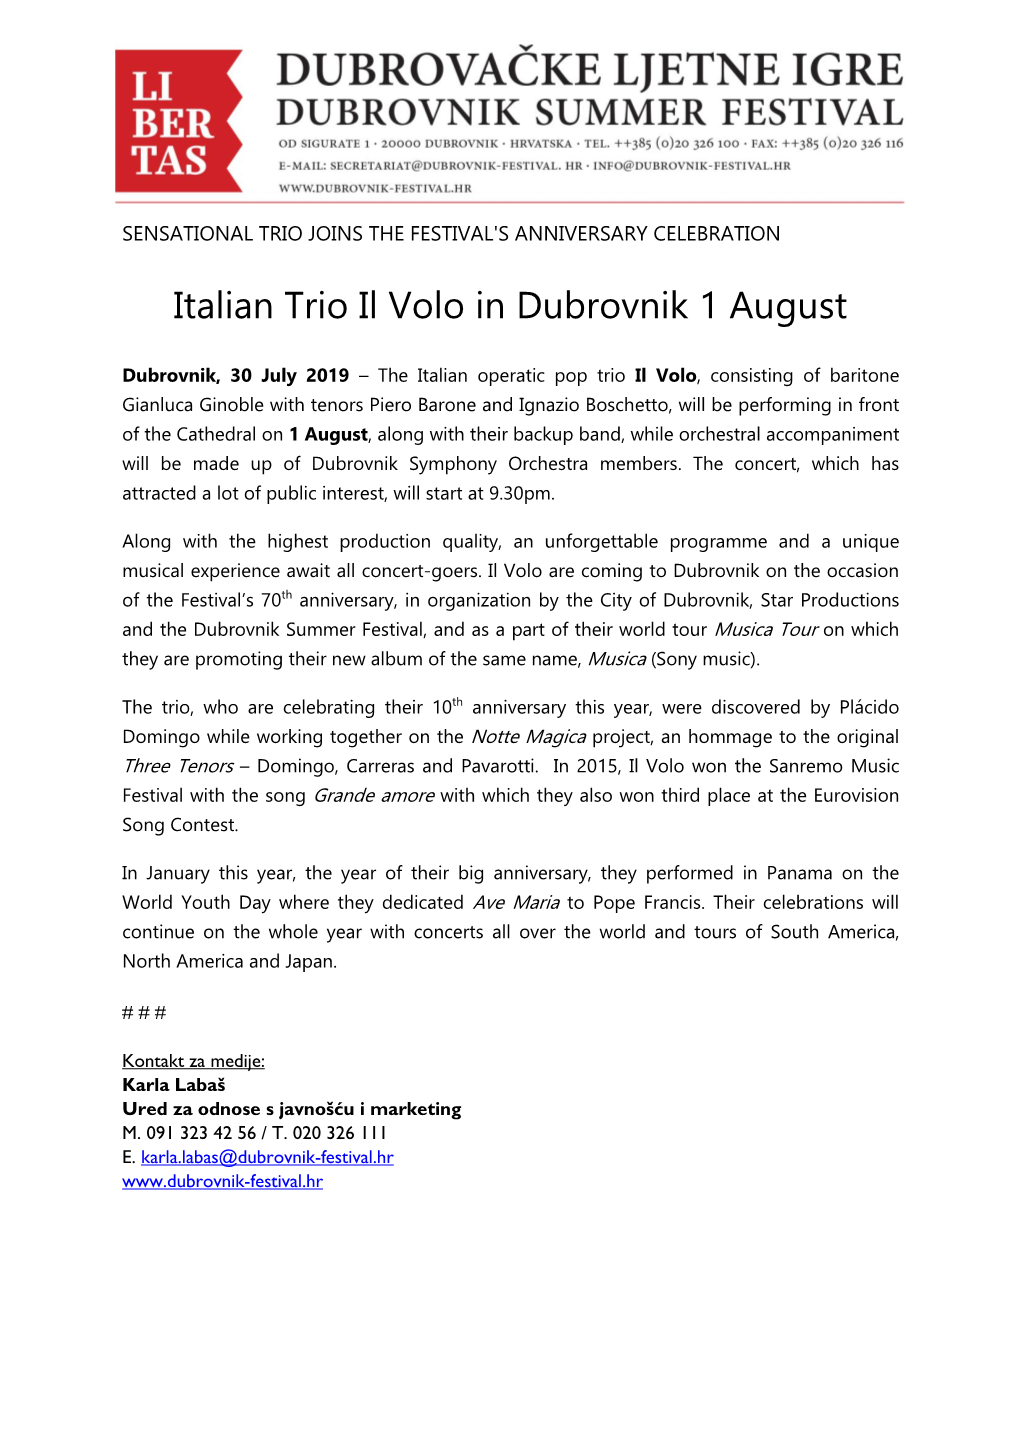 Italian Trio Il Volo in Dubrovnik 1 August